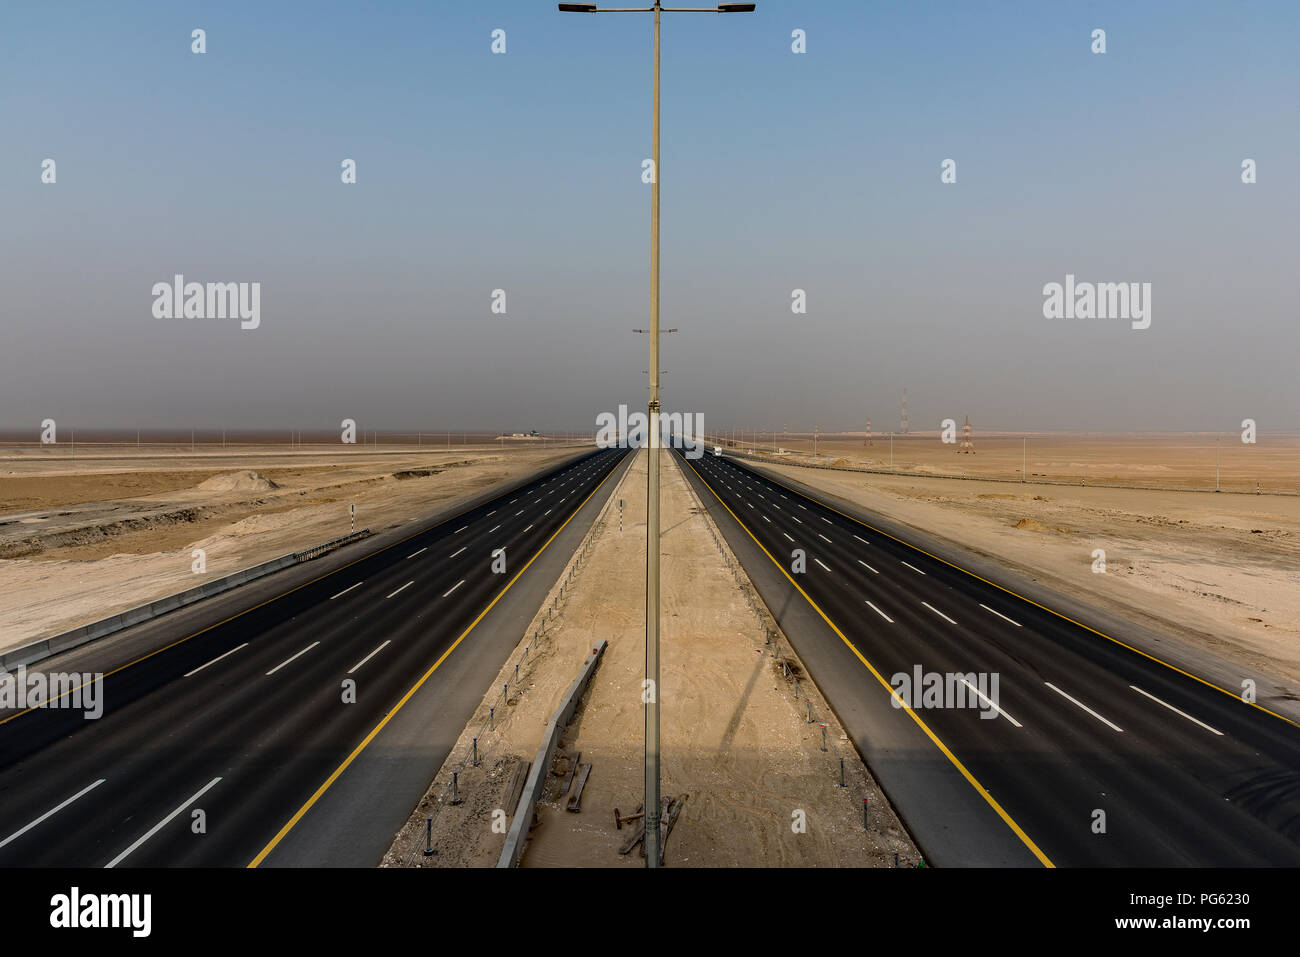 Mafraq-Ghweifat autostrada internazionale, Emirati Arabi Uniti.Il limite di velocità è di 160 km/h su una superficie pulita, liscia e piatta a 8 corsie. Foto Stock